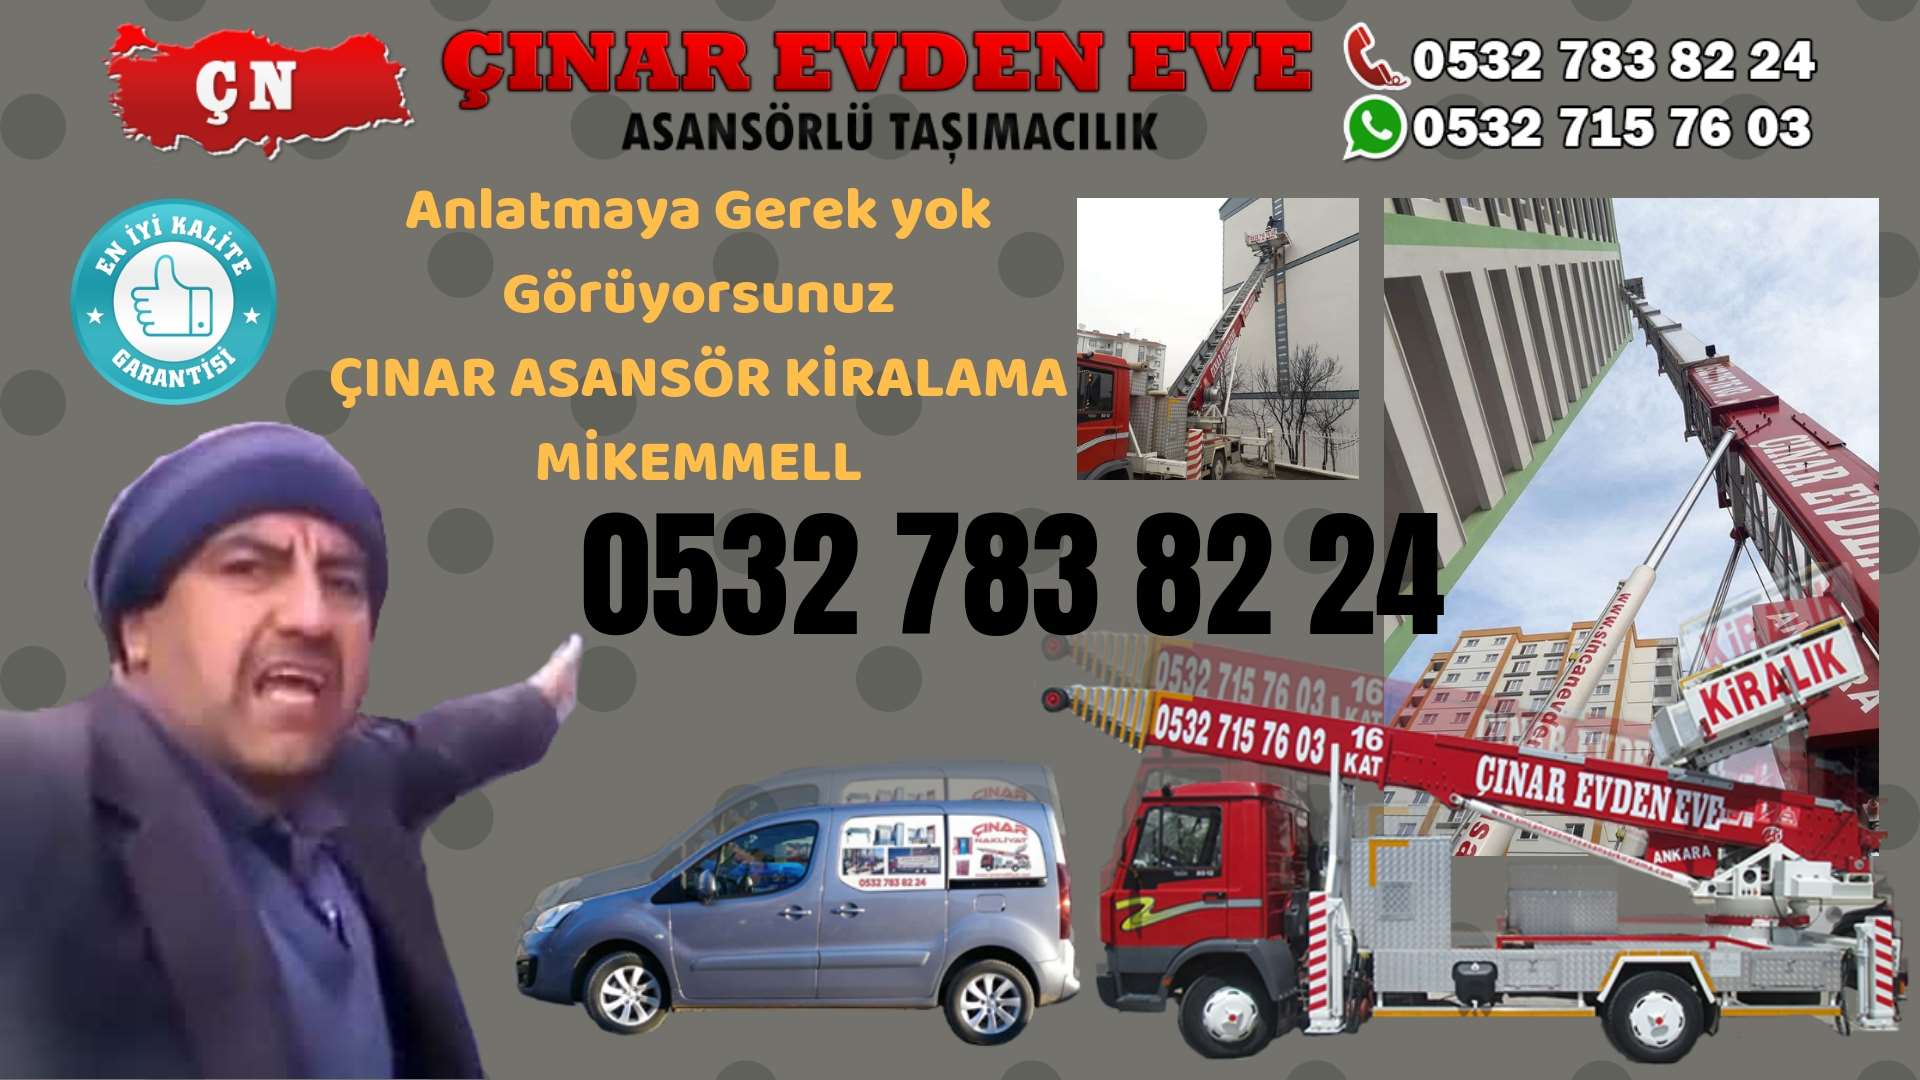 Ankara Siteler Ankara asansör kiralama hizmeti sizlere başta kalite ve maddi acıdan tasarruf 0532 715 76 03